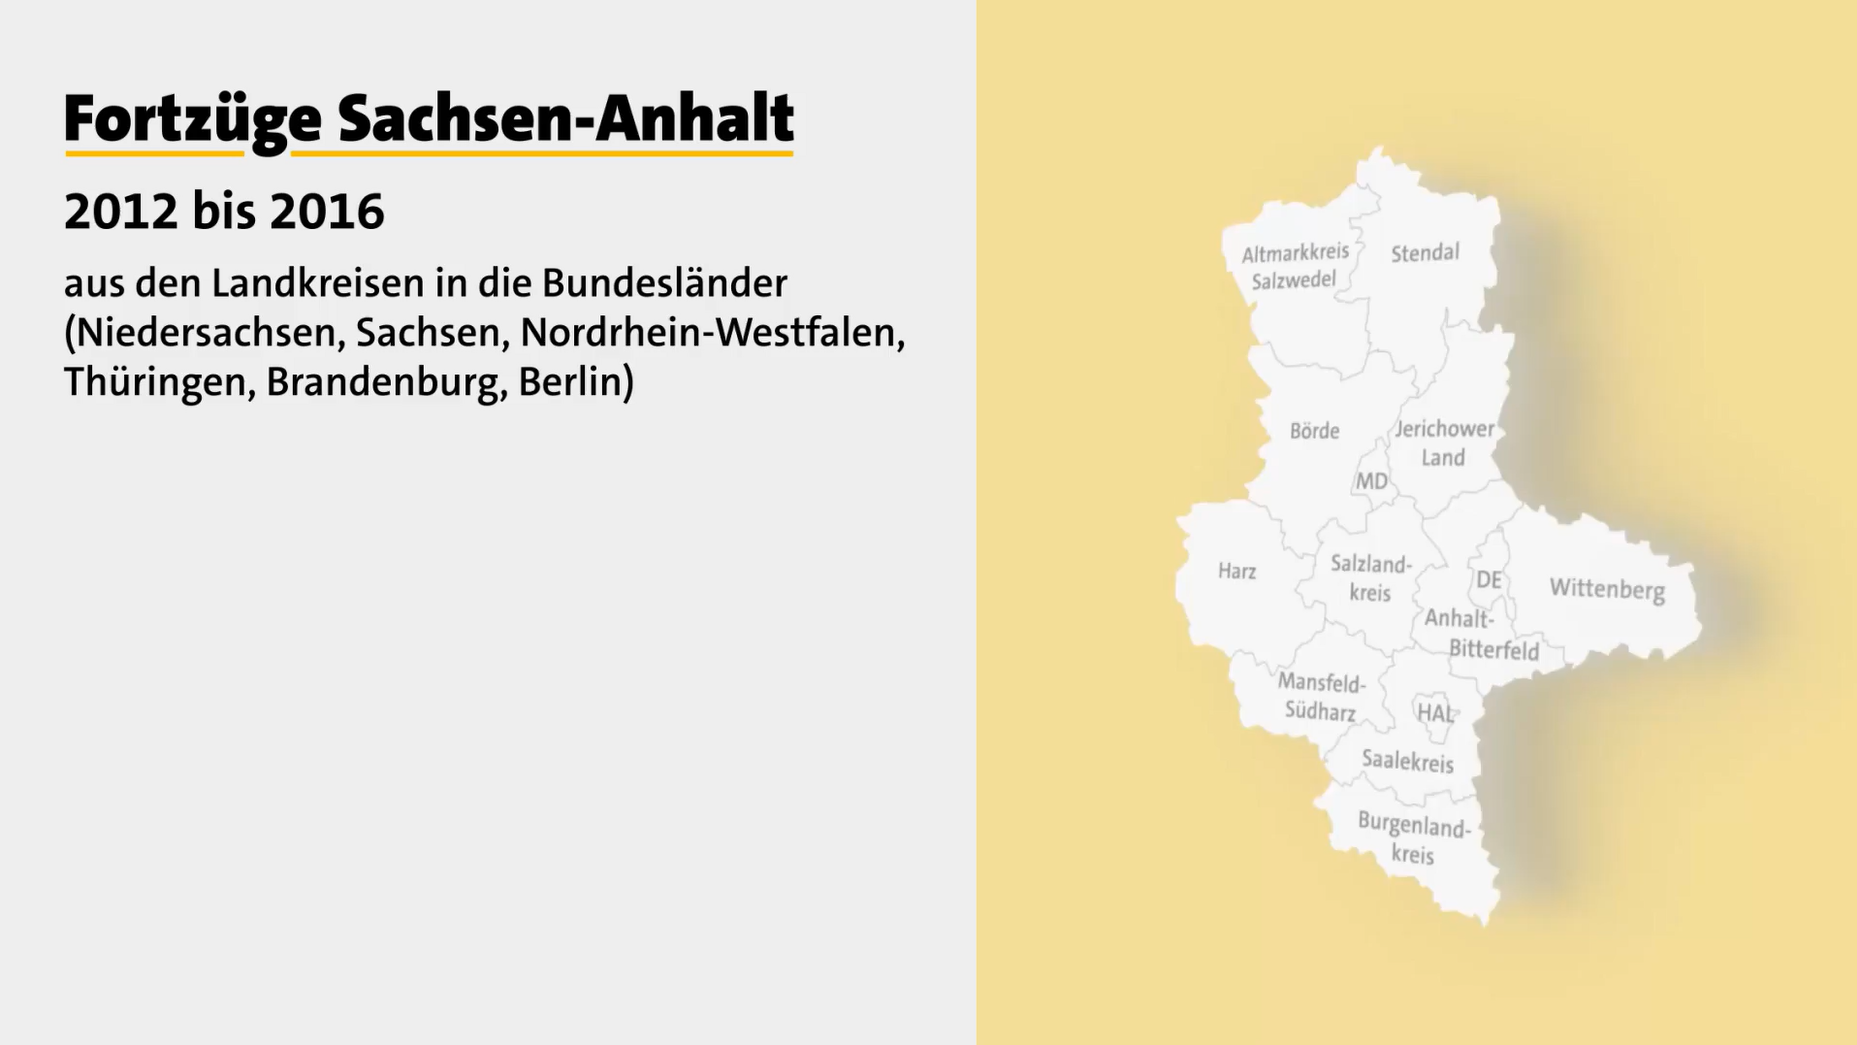 Startbild des Videos zu Fortzügen Sachsen-Anhalt 2012 bis 2016